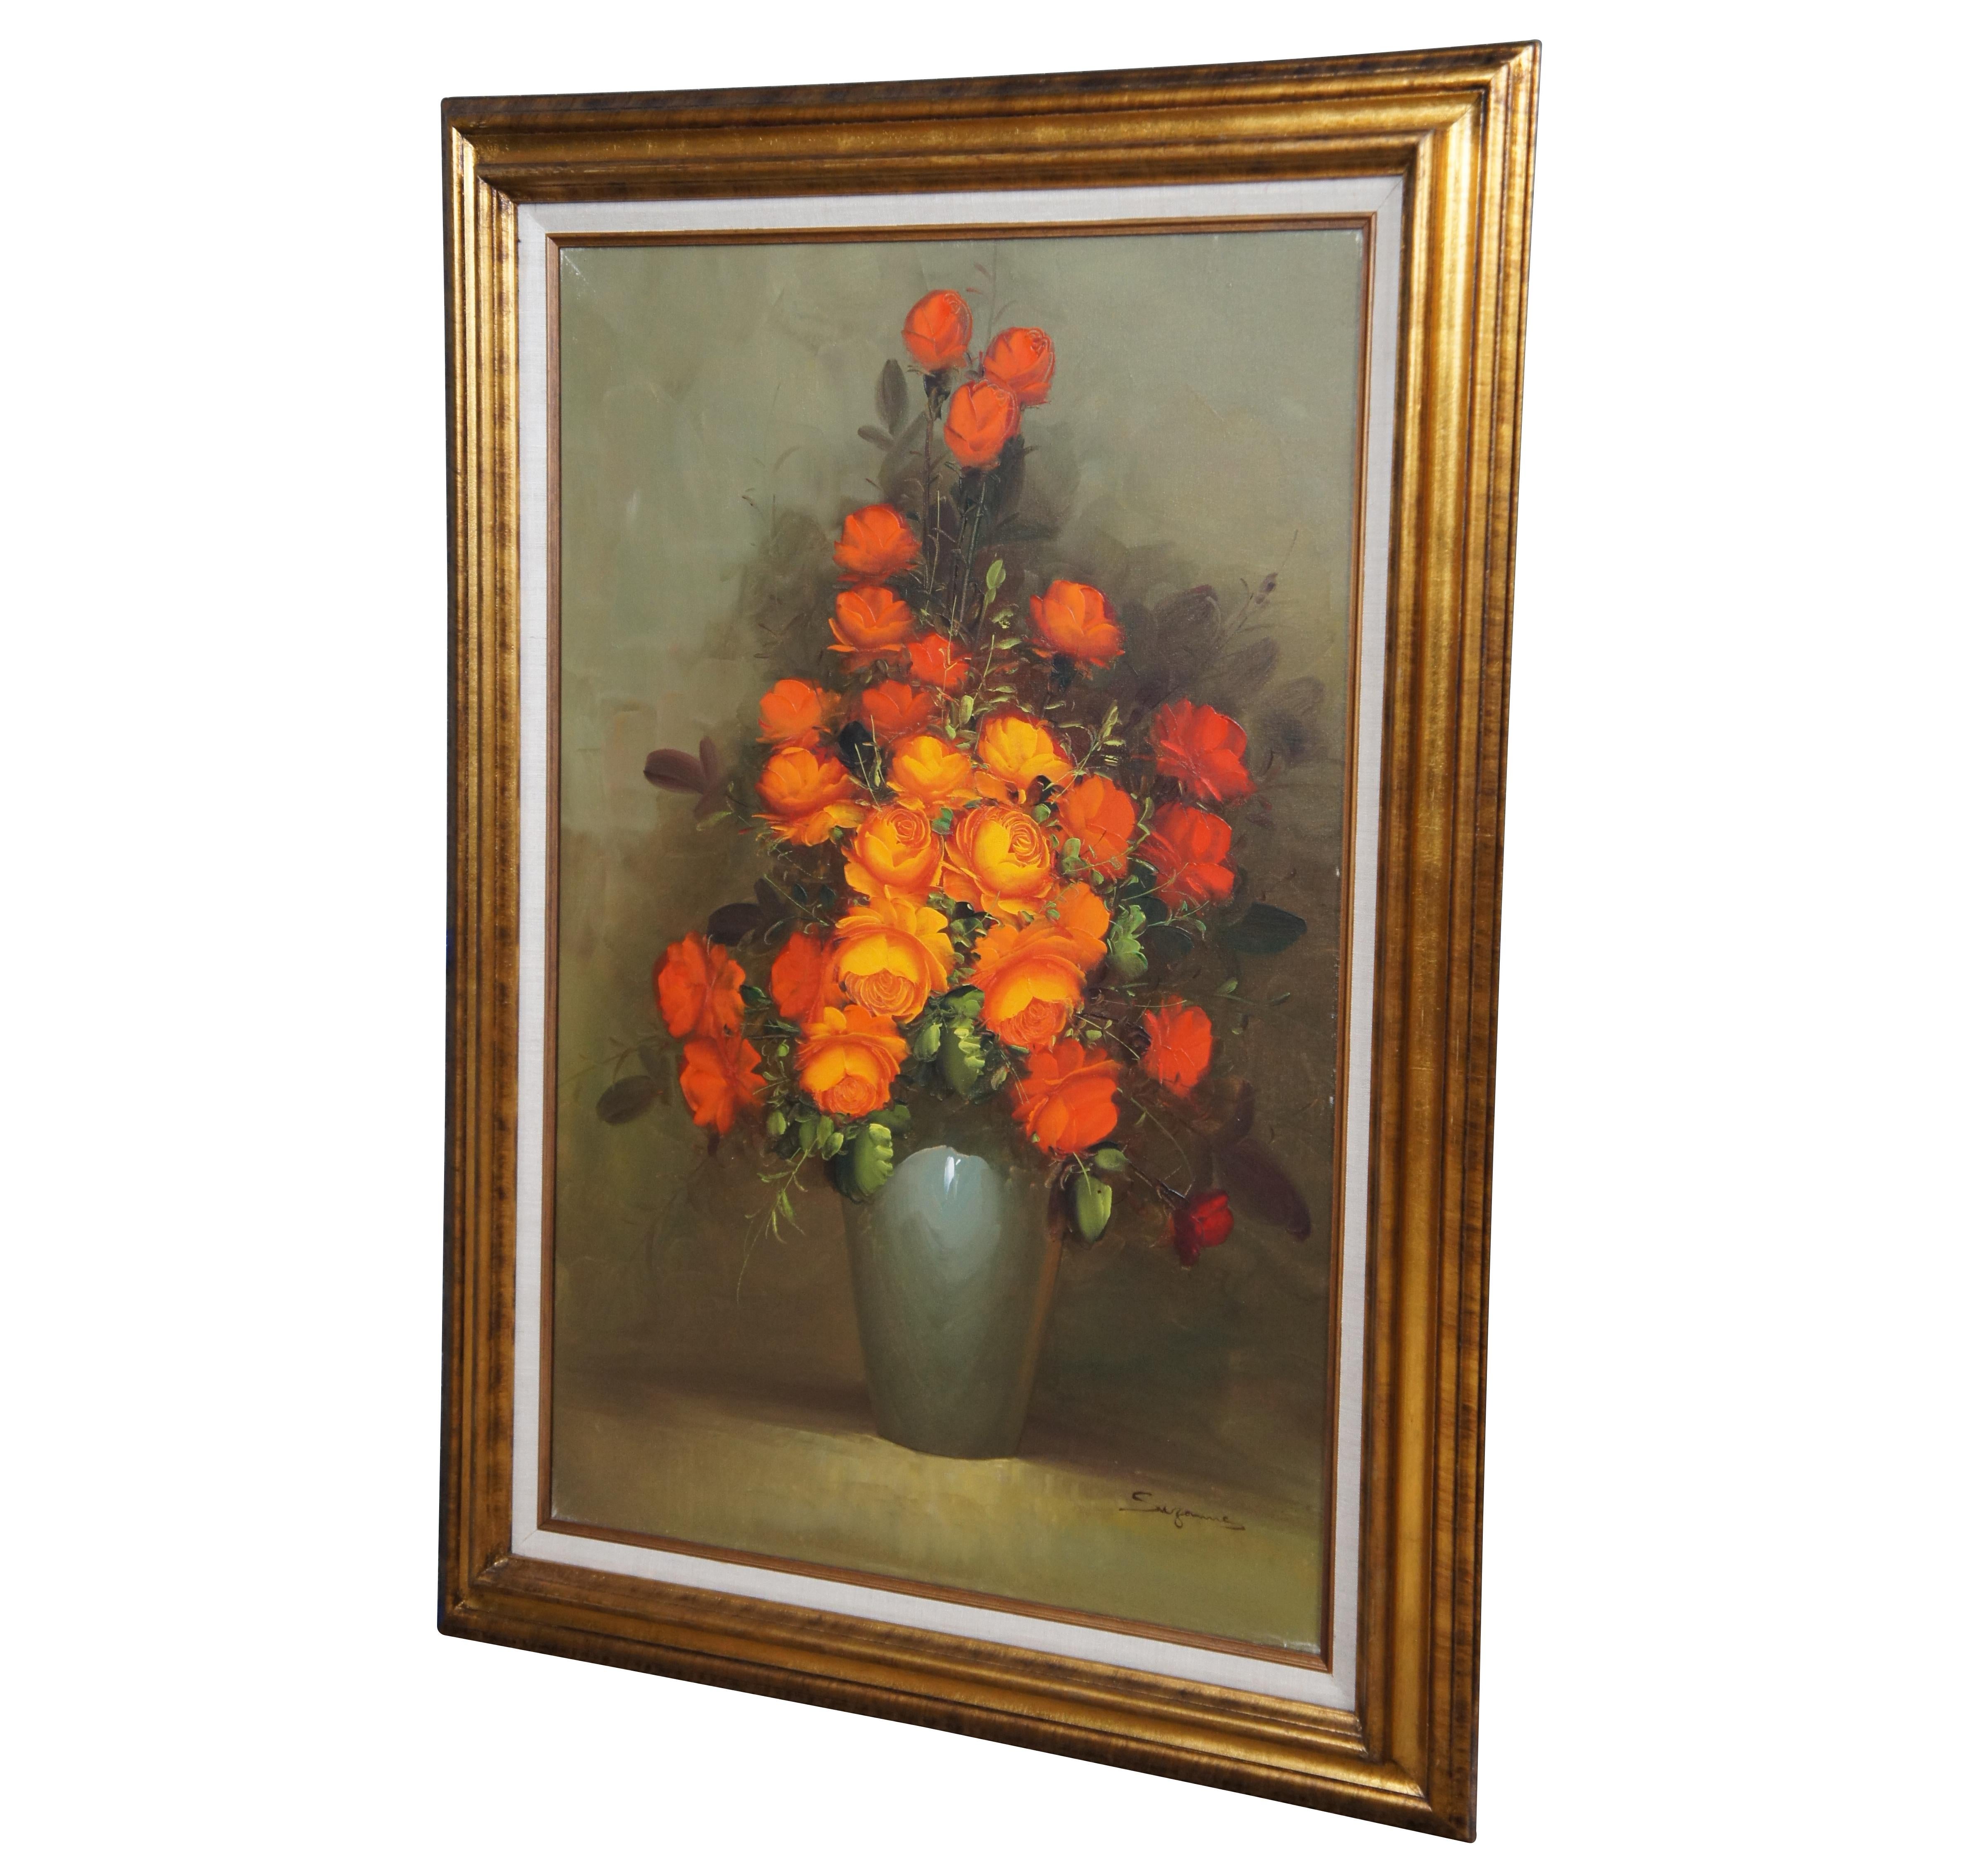 Vintage Stillleben Ölgemälde auf Leinwand von einem Blumenstrauß aus orangefarbenen Rosen in einer hellblauen Vase. Signiert von der Künstlerin Suzanne unten links.

Abmessungen

32